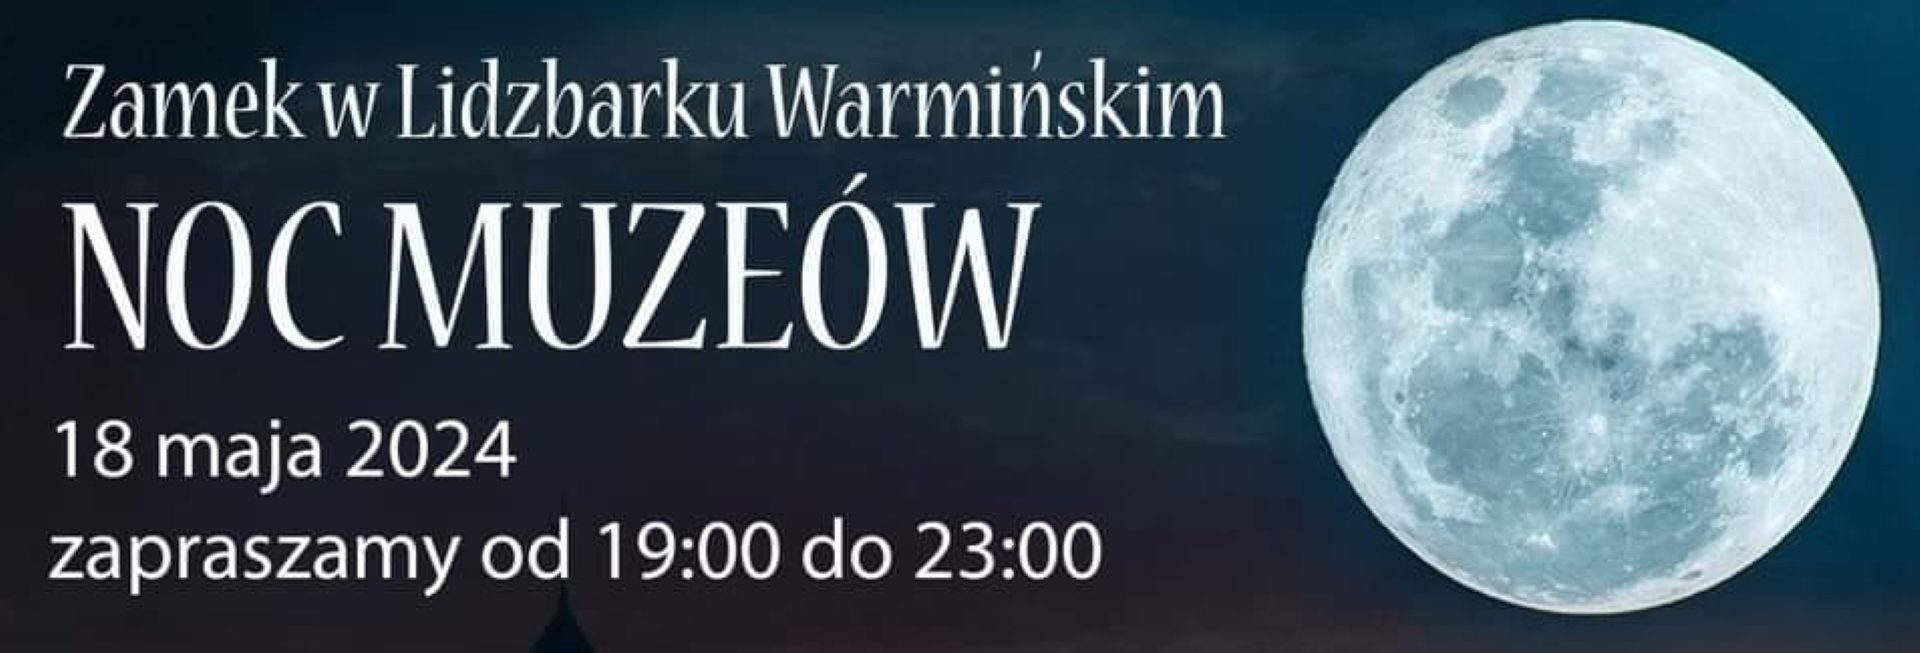 Plakat zapraszający w sobotę 18 maja 2024 r. do Zamku w Lidzbarku Warmińskim na Noc Muzeów - Zamek Lidzbark Warmiński 2024.